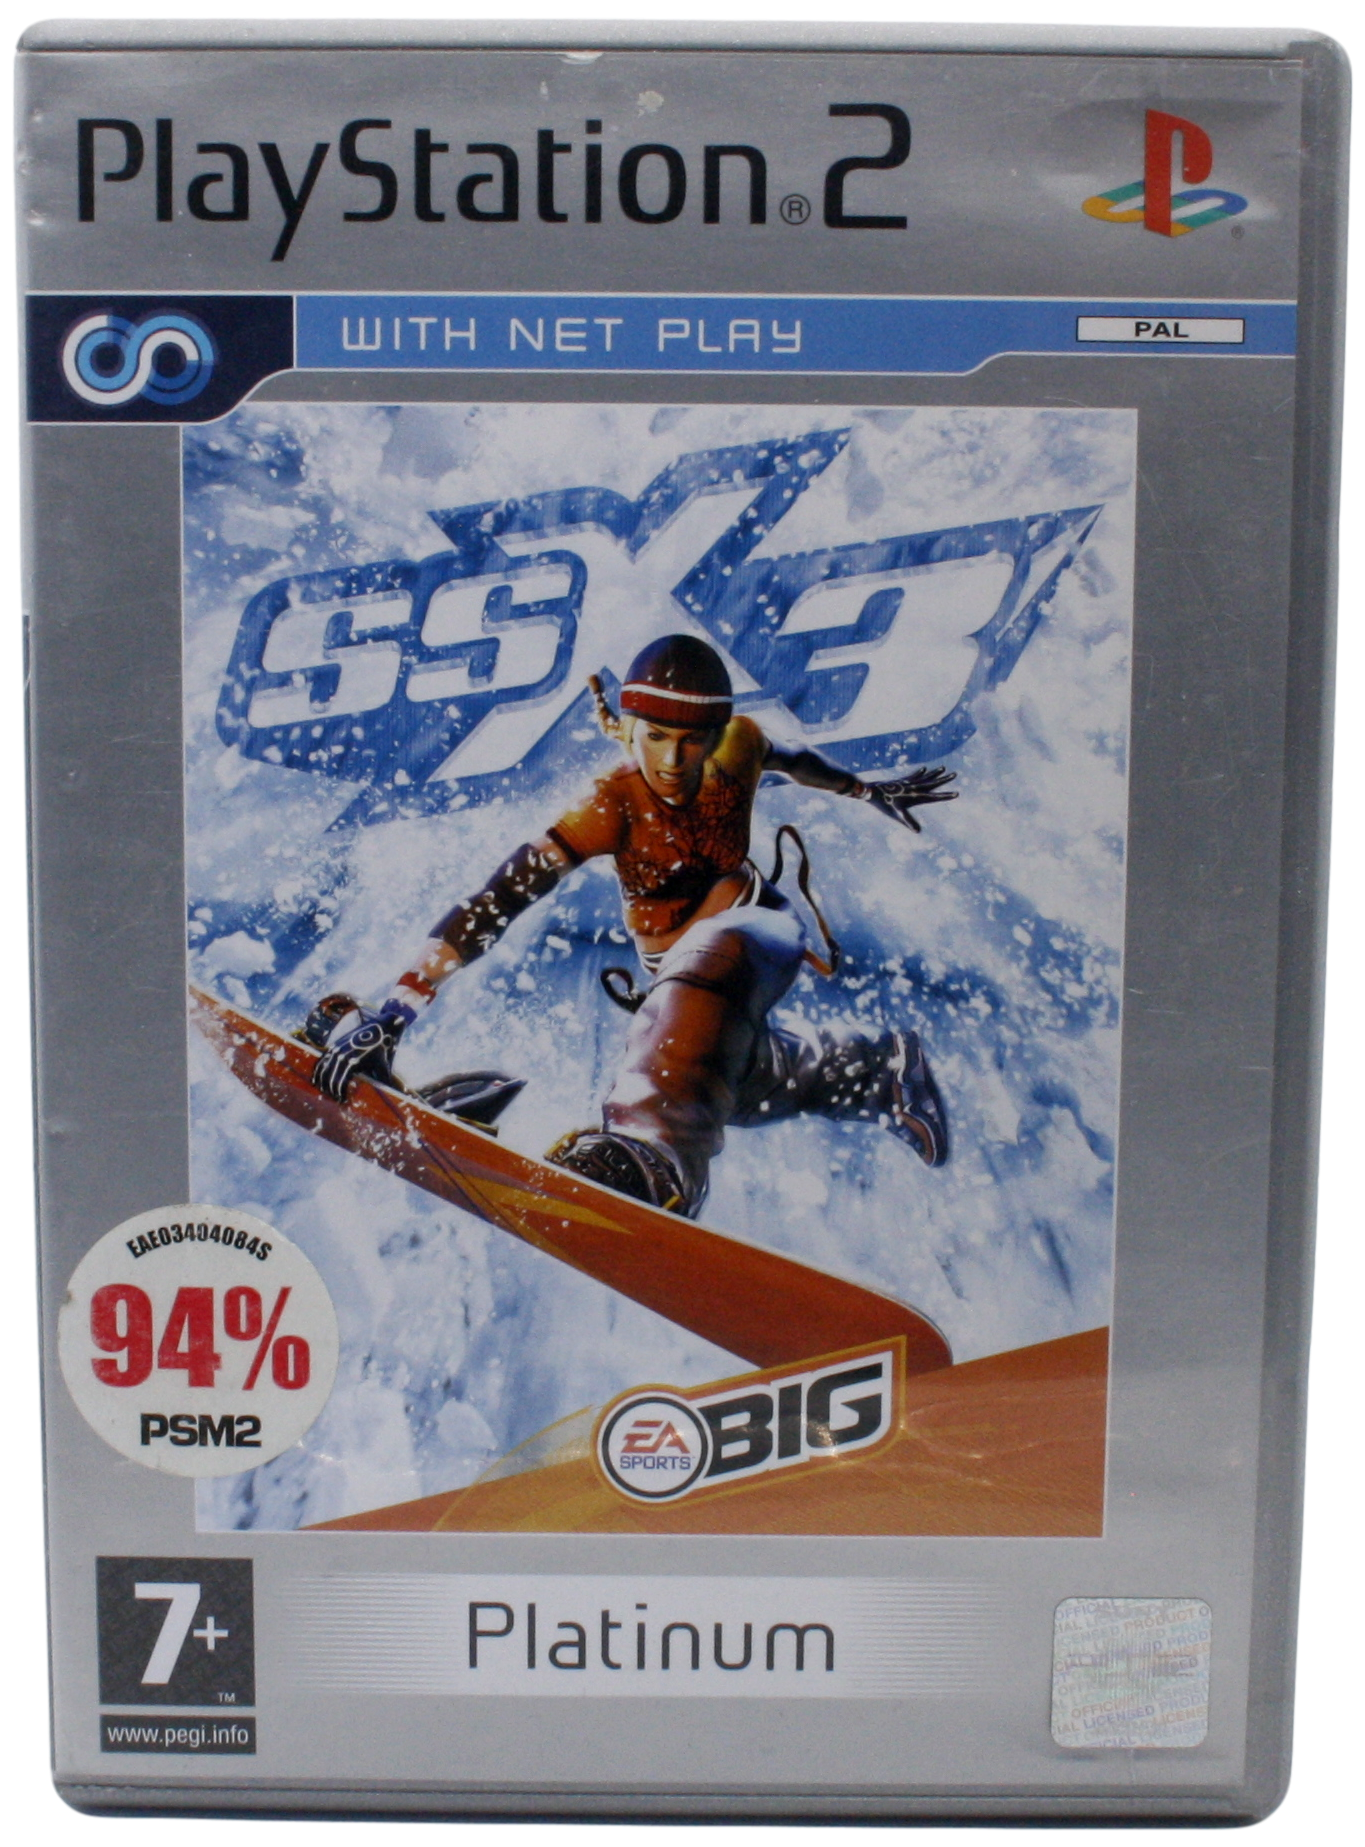 SSX 3 (Platinum) (PS2)